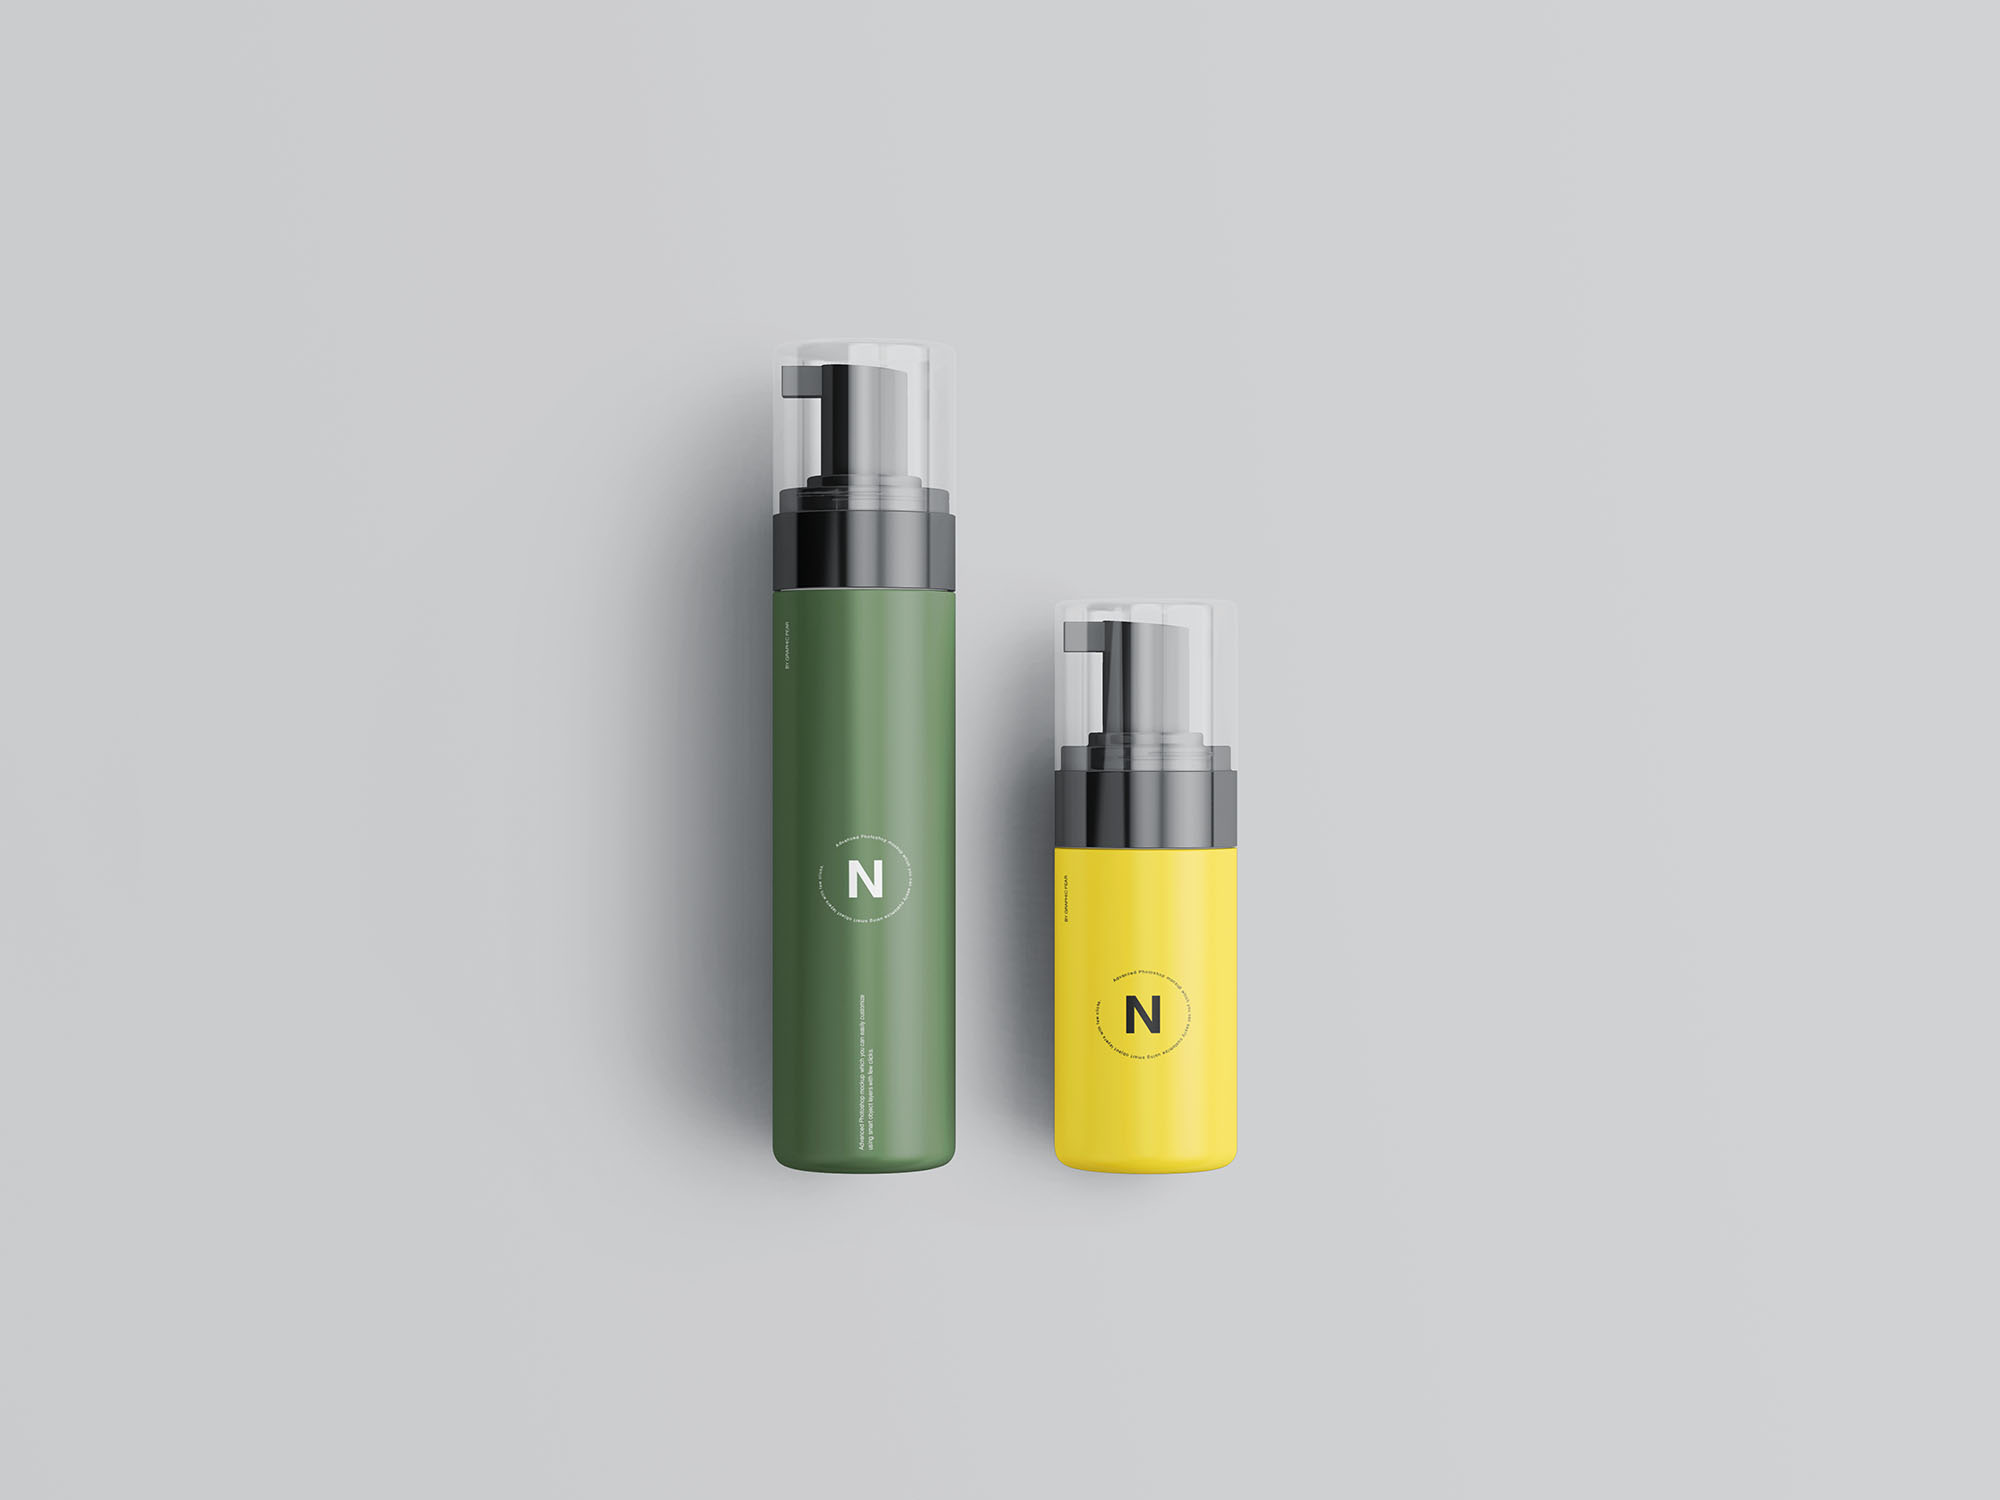 按压式化妆品护肤品瓶外观设计第一素材精选模板 Cosmetic Bottles Packaging Mockup插图(7)